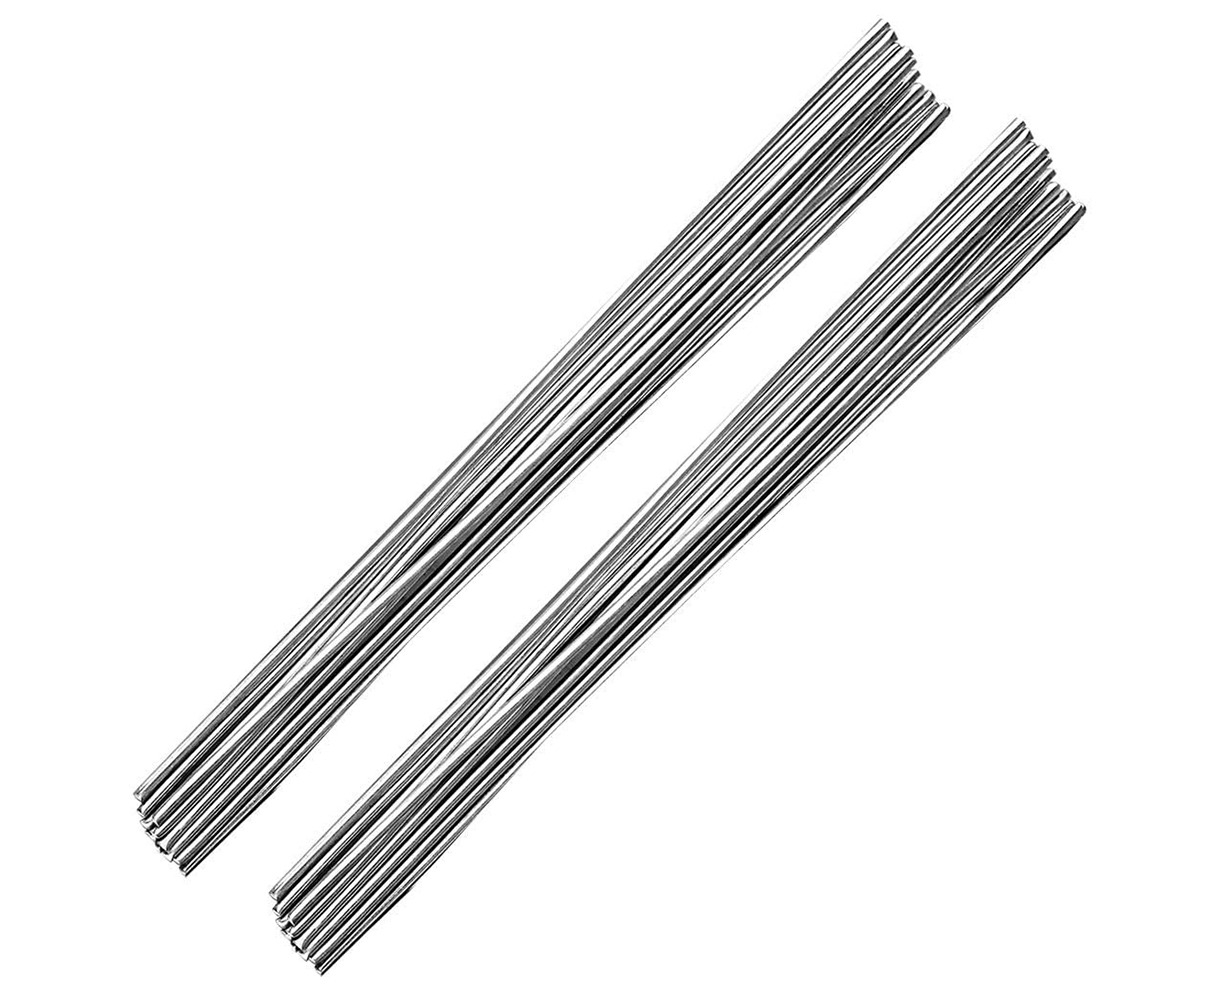 20/50PCS Aluminum Solution Welding Flux-Cored Rods Wire Brazing Rod Copper Aluminum Welding Rods for Electric Power Chemistry 2MM/1.6MM 50CM1.6MM 20PCS 